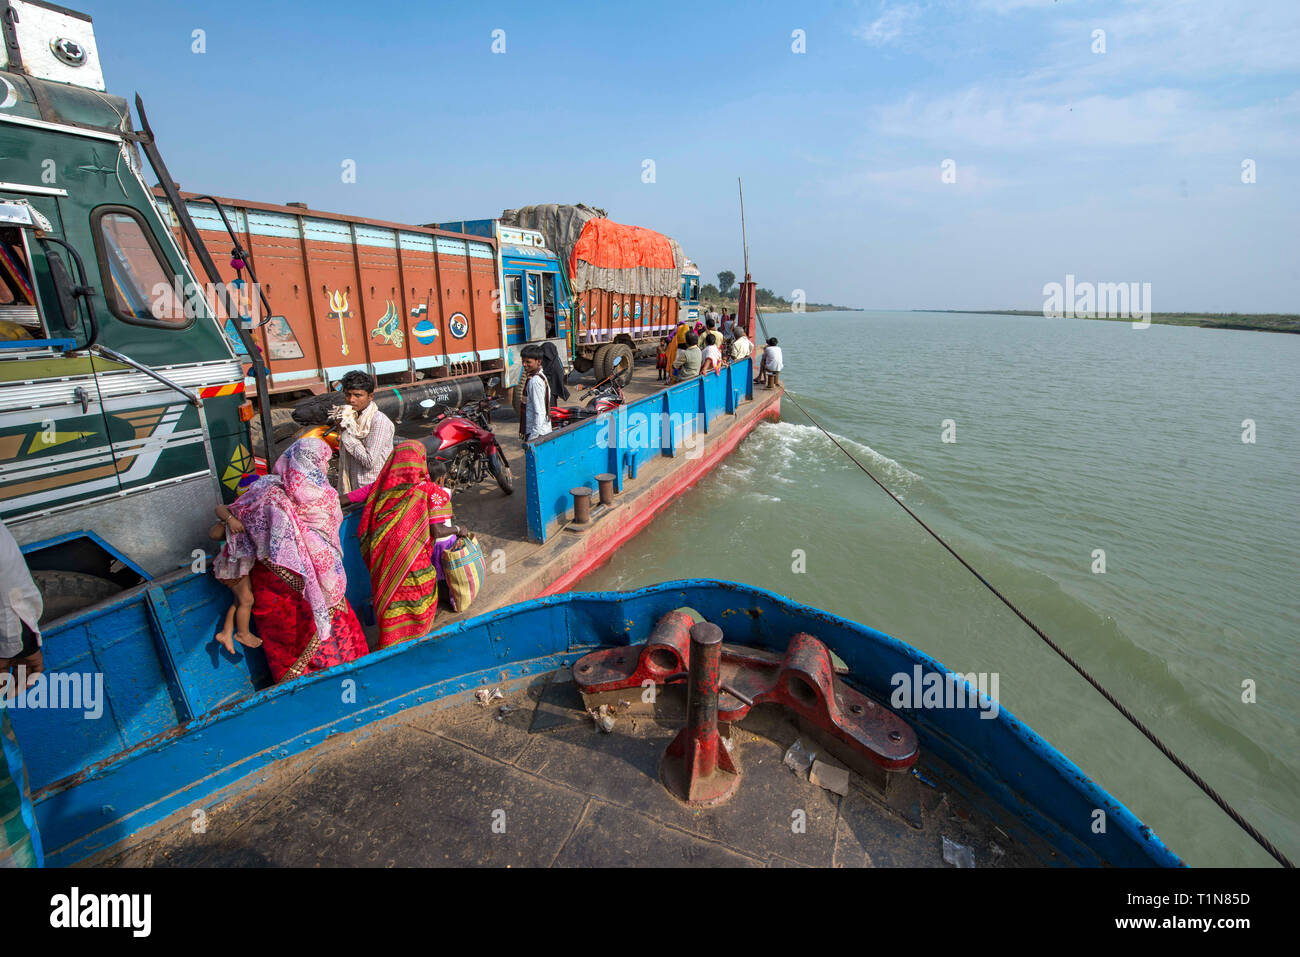 RAJMAHAL, BIHAR, INDIA, on board of a car ferry on river Ganges between Rajmahal Bihar and Manikchak West Bengal Stock Photo